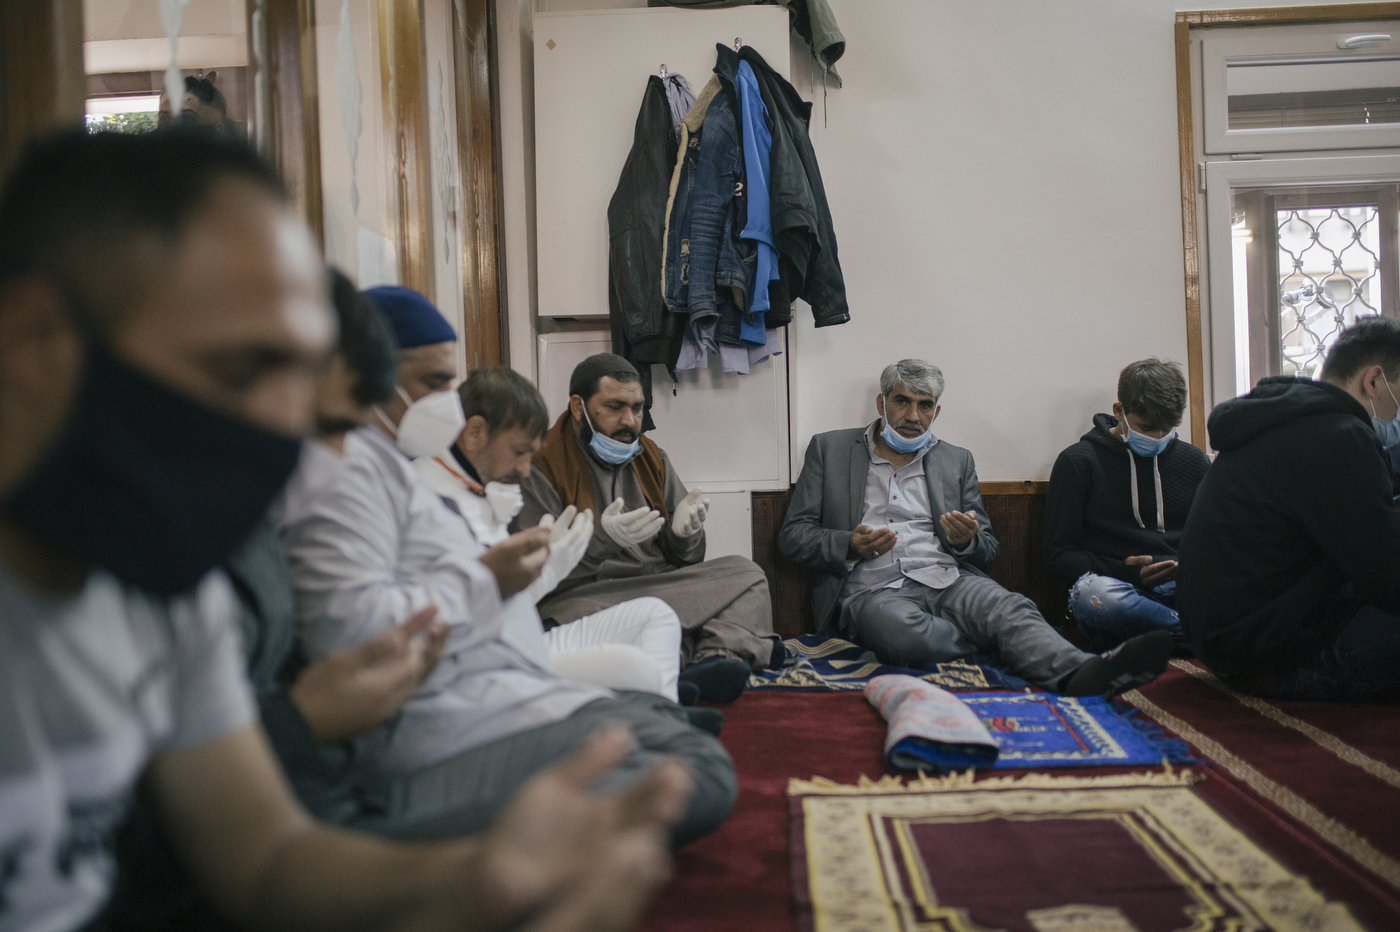 Bajram i korona virus: Jutarnja molitva i obeležavanje Ramazanskog bajrama u Nišu